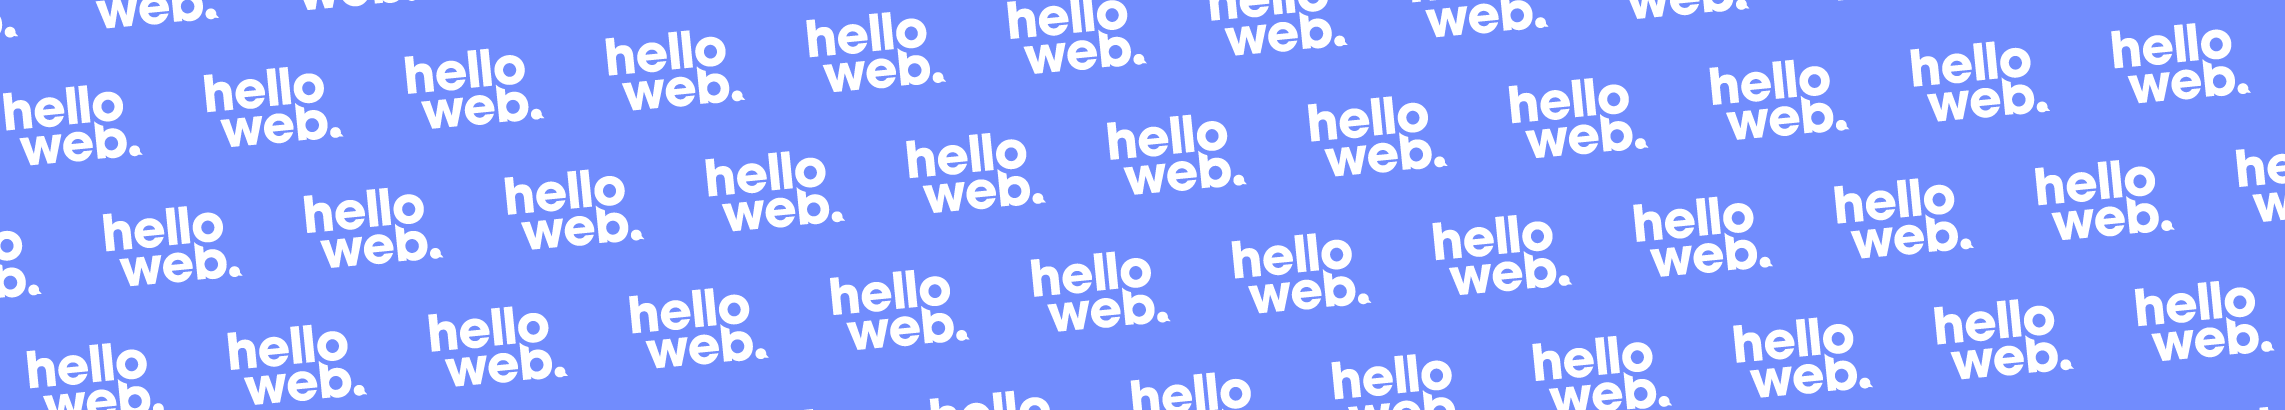 Hello web's profile banner